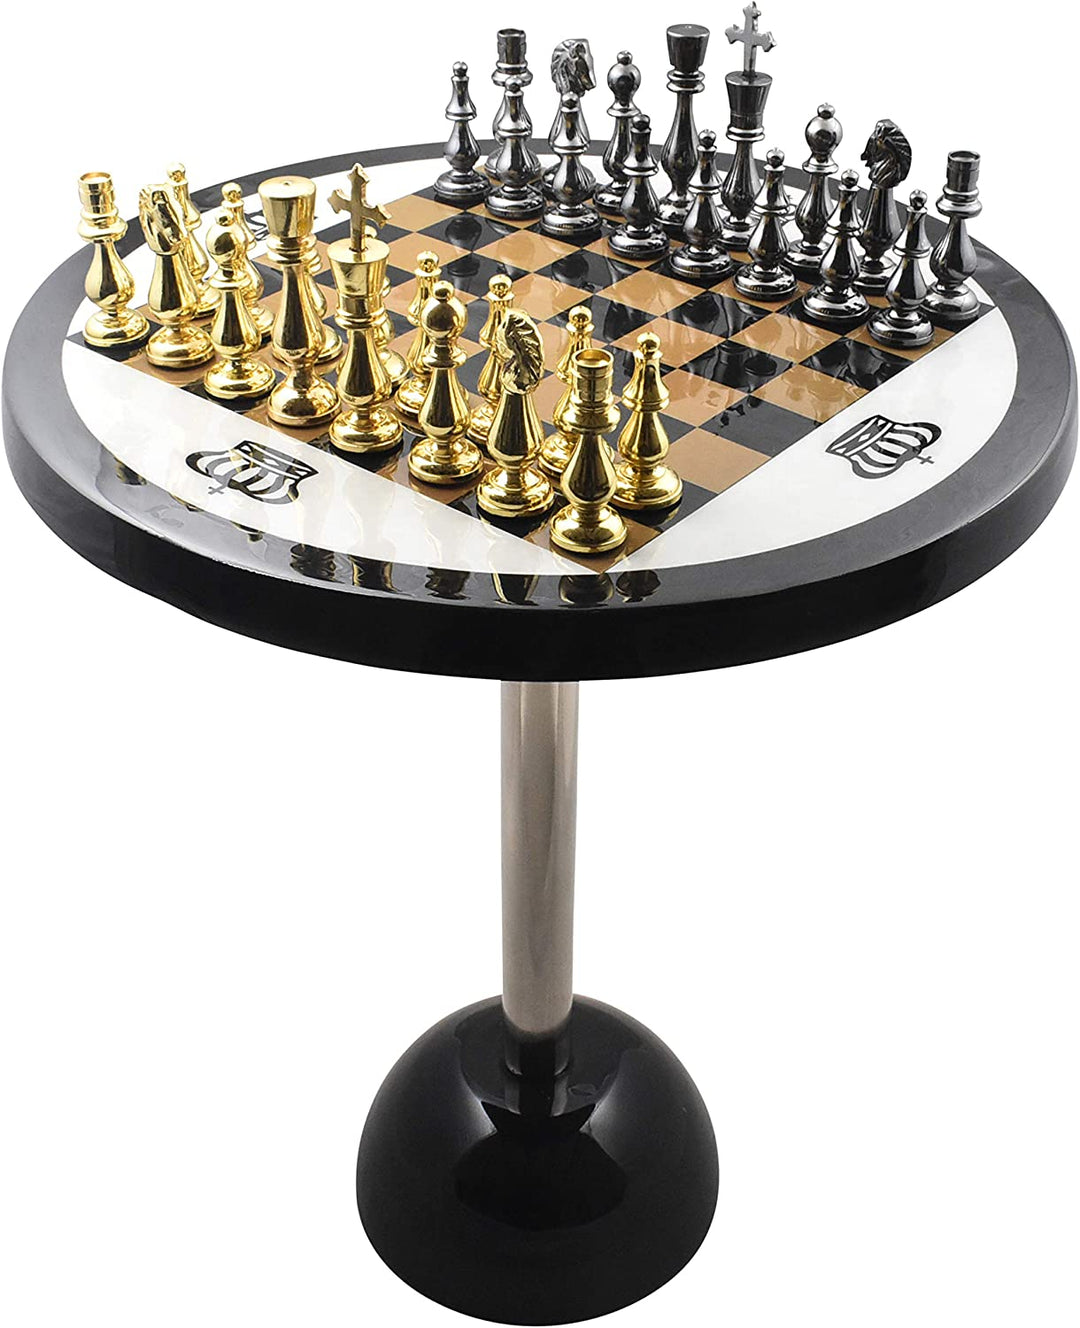 Jeu de société de pièces d'échecs de luxe en laiton et métal, objets de collection, avec ensemble de Table, 21 pouces de haut